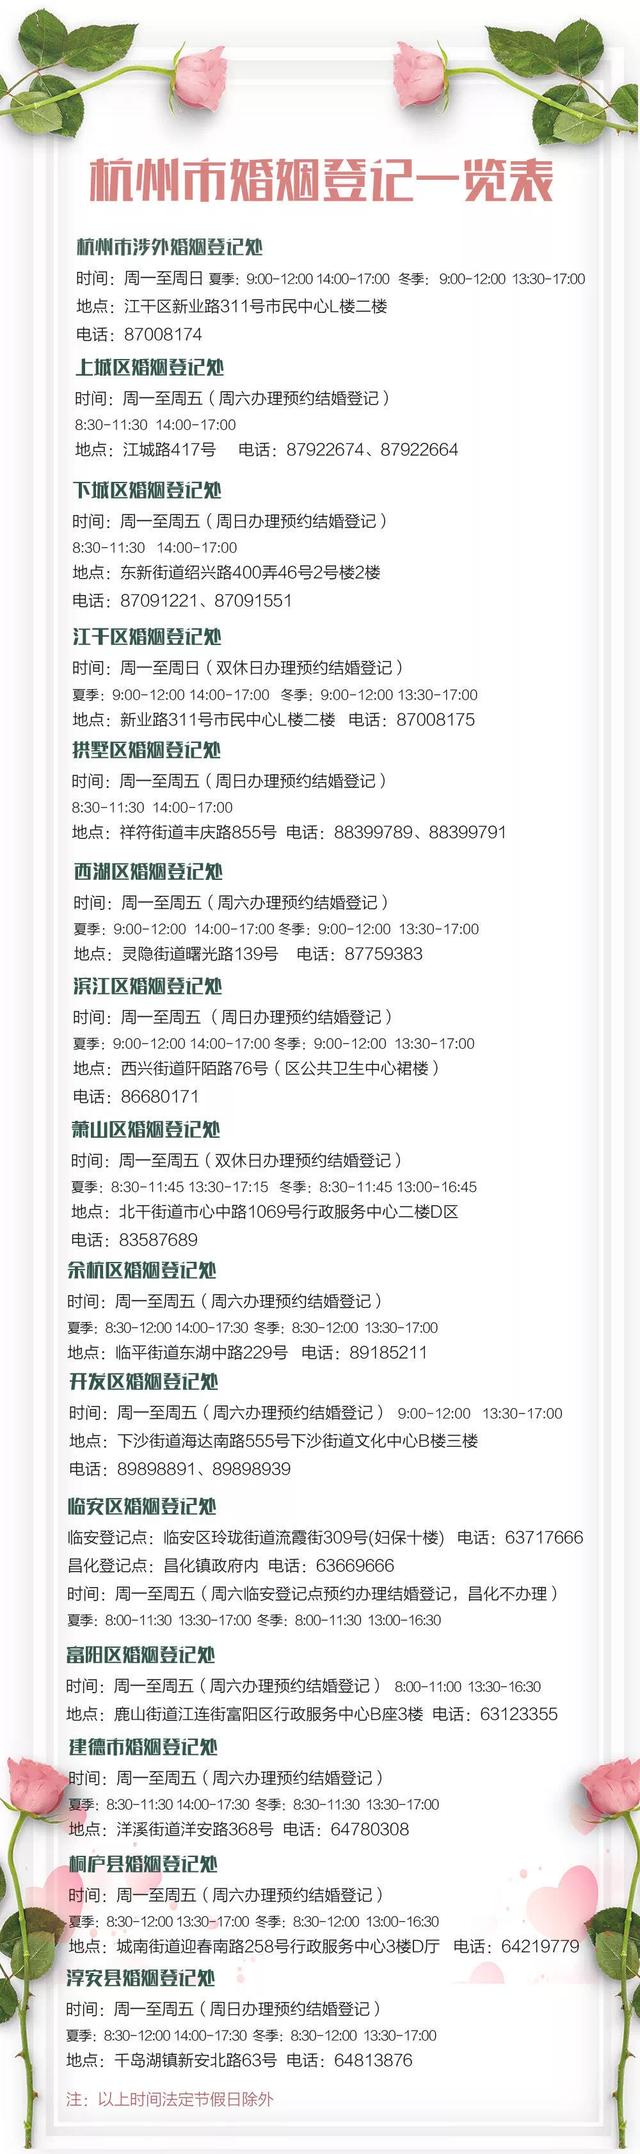 杭州3月14日领证预约满了怎么办 可以去现场排队领证吗